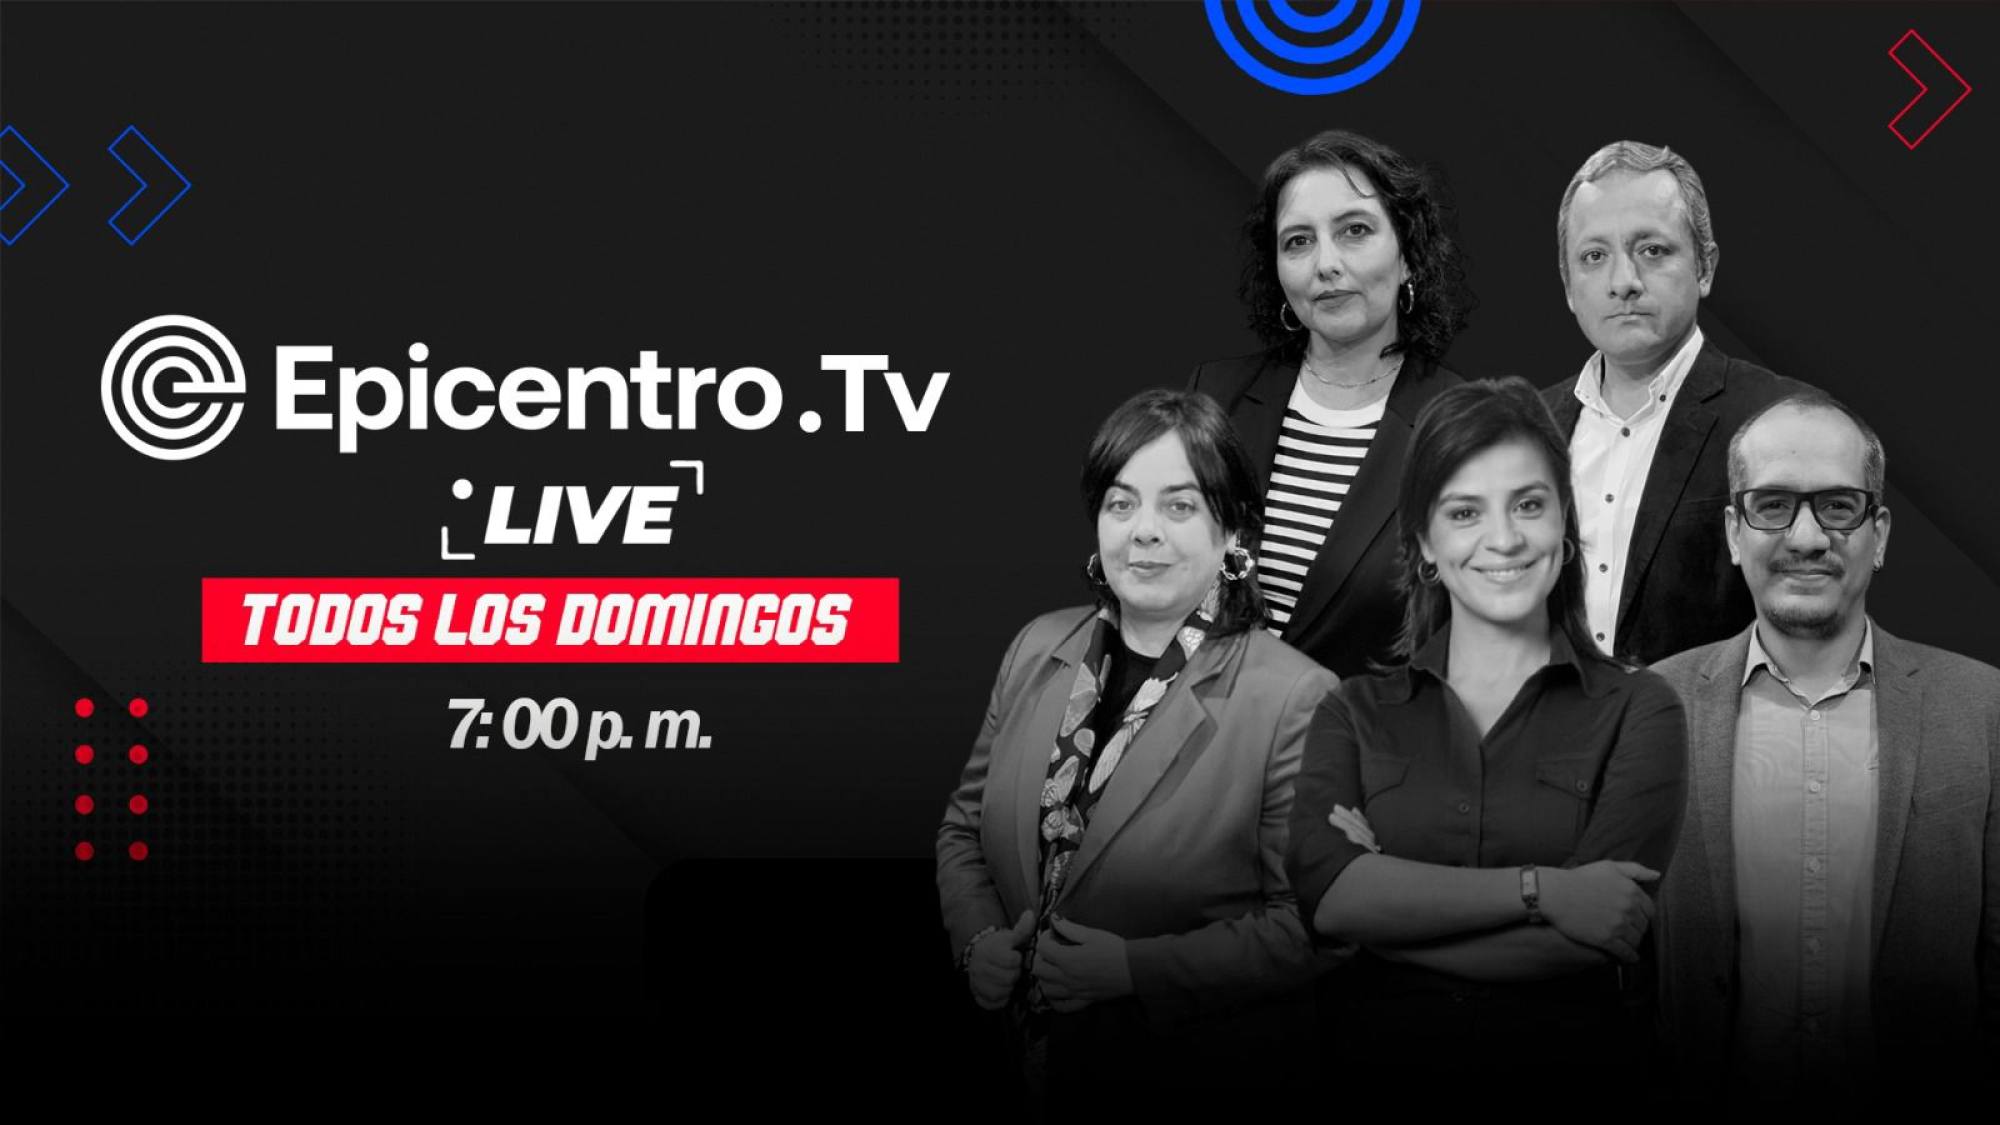 Epicentro TV Live | Soy la jefa suprema pero no mando, Epicentro TV